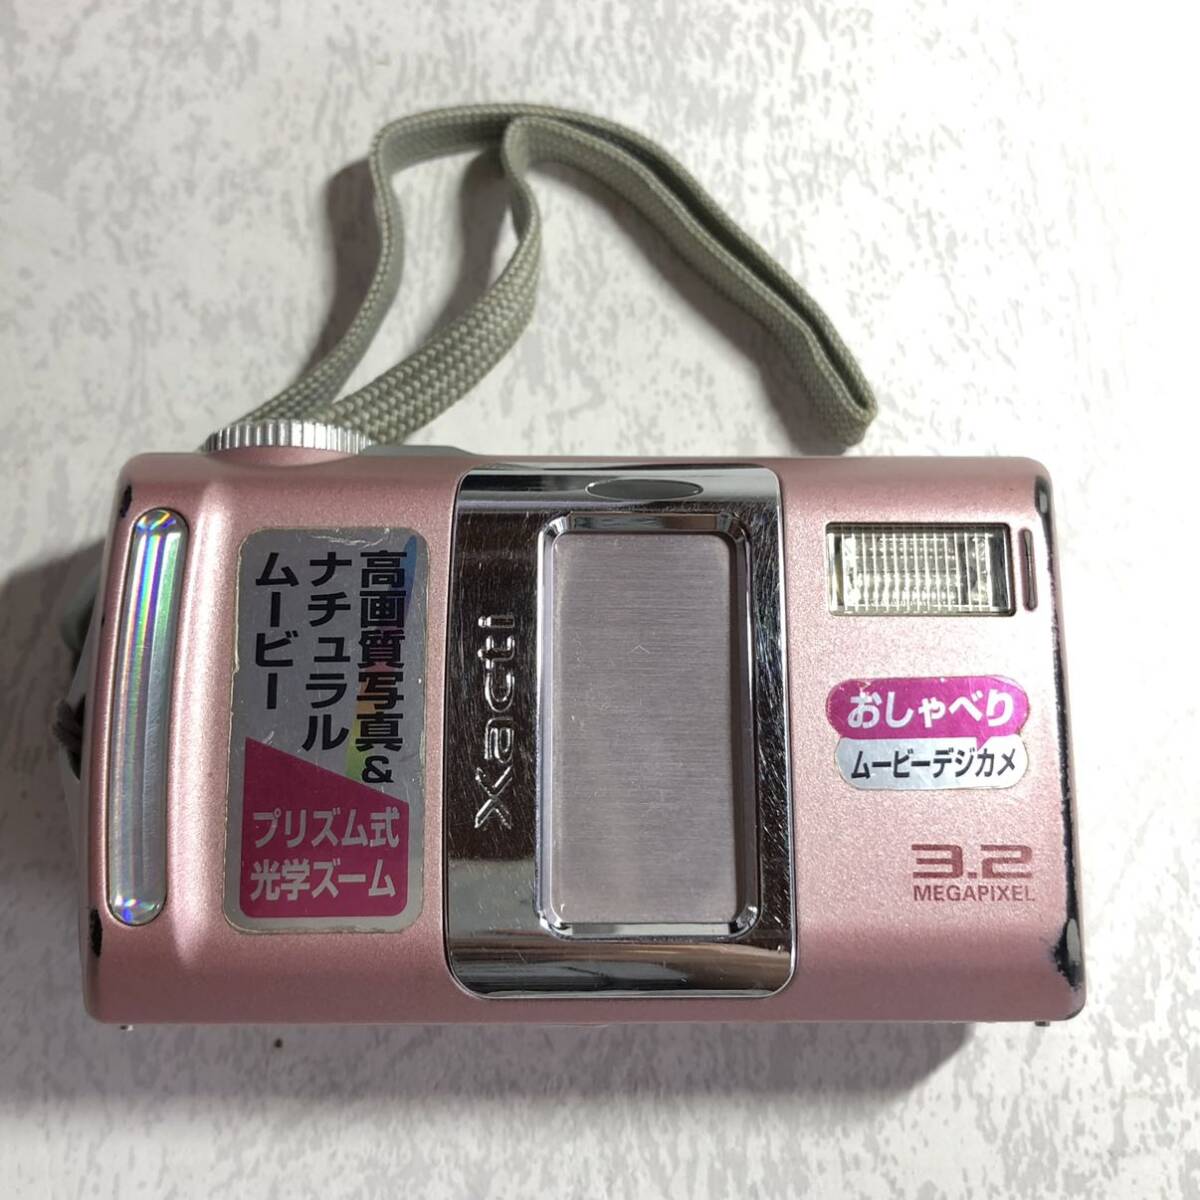 *SANYO Sanyo цифровая камера DSC-J1 type Xacti The kti Misty - розовый инструкция имеется с коробкой V81